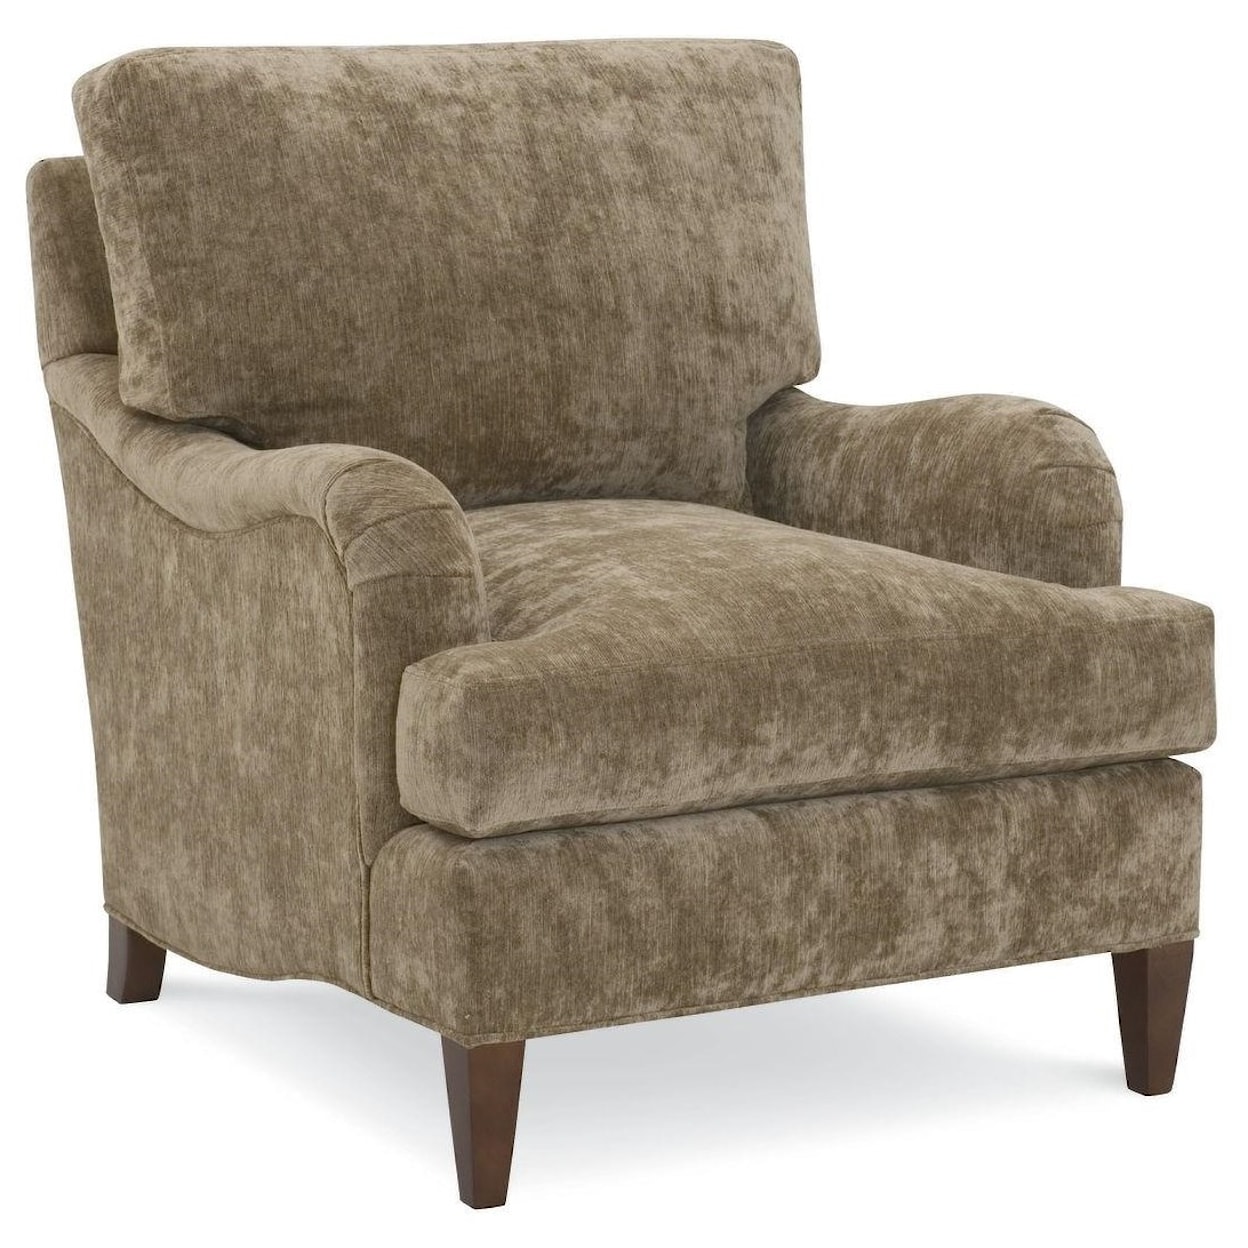 C.R. Laine Custom Design 8800 Series Custom Design Chair